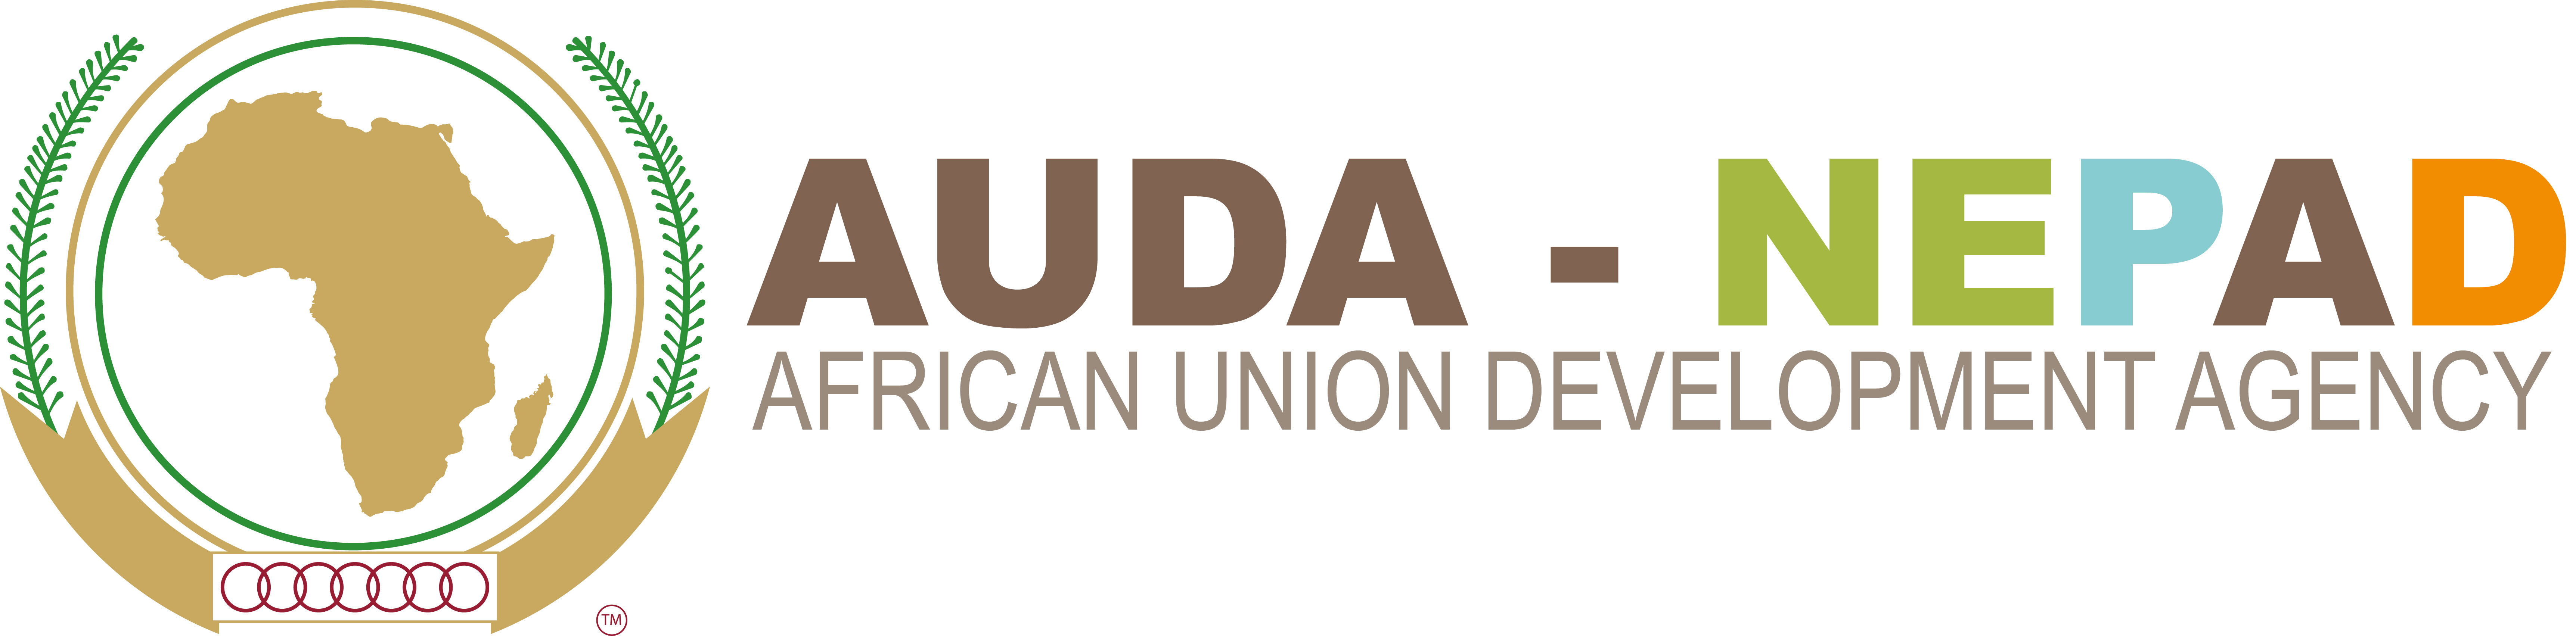 Image: logo de l'Agence de developpement de l’Union Africaine (AUDA-NEPAD)